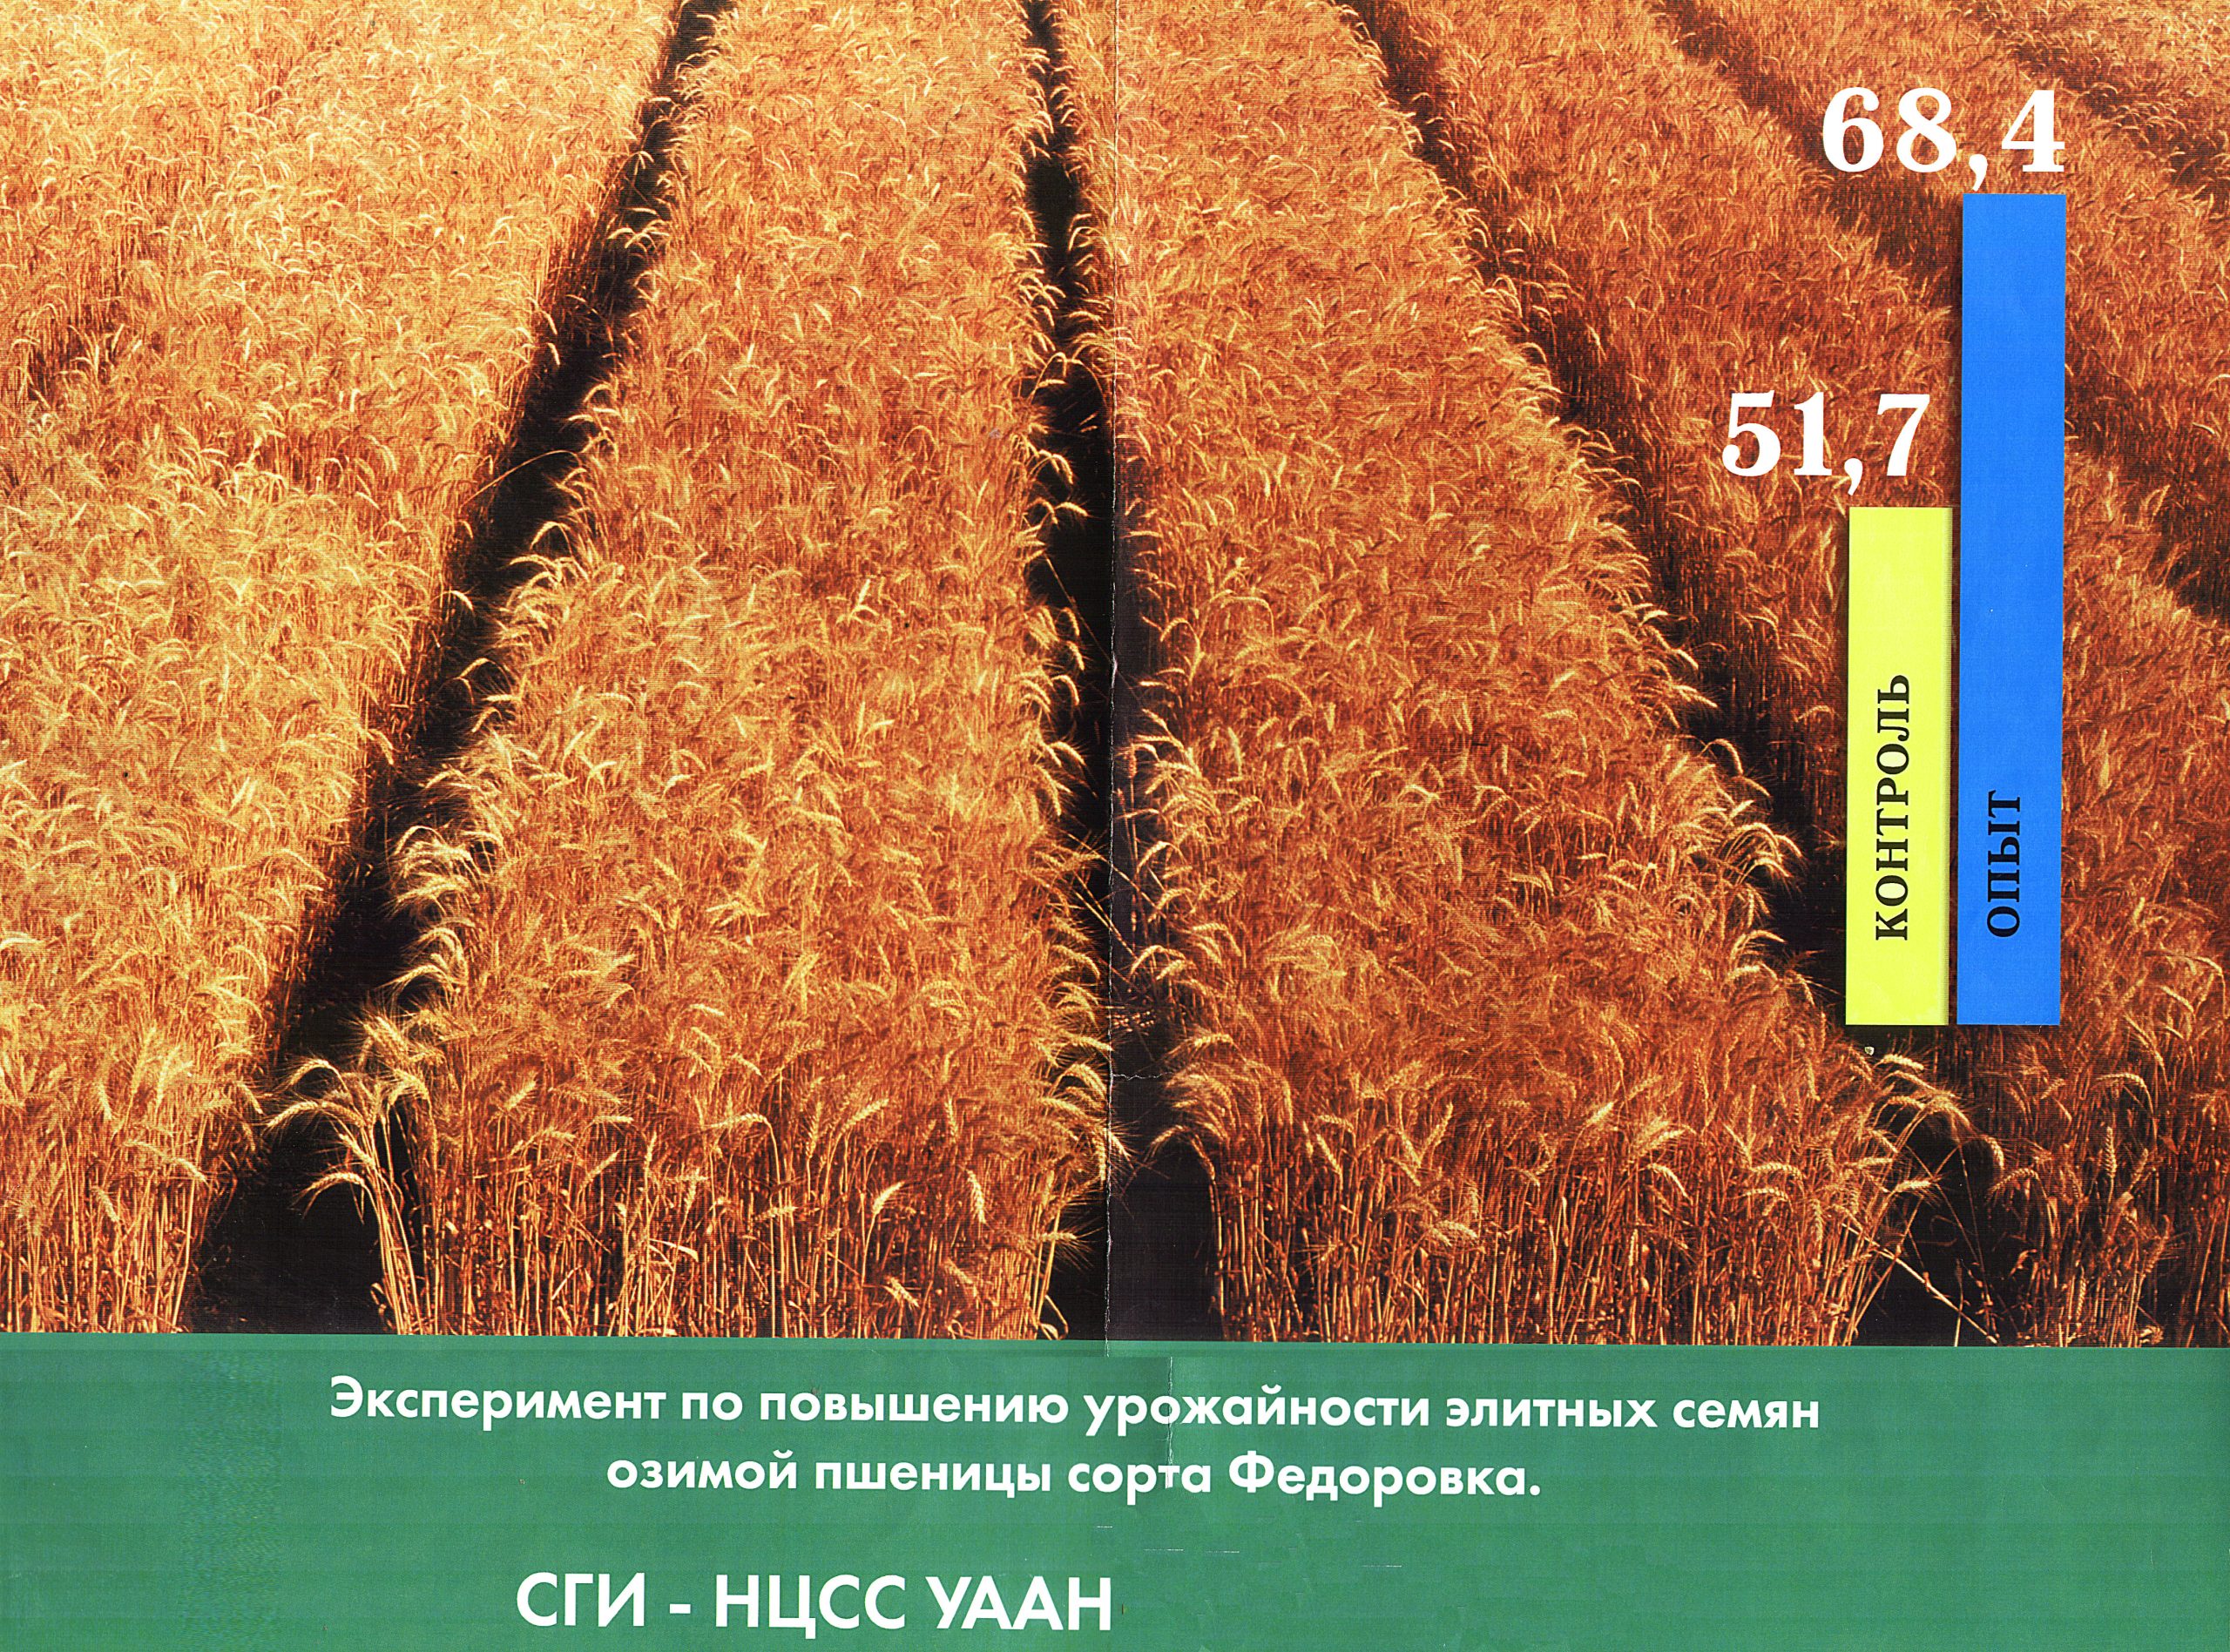 Результаты эксперимента по влиянию МВ поля на пшеницу сорта Федоровка. Увеличение урожайности